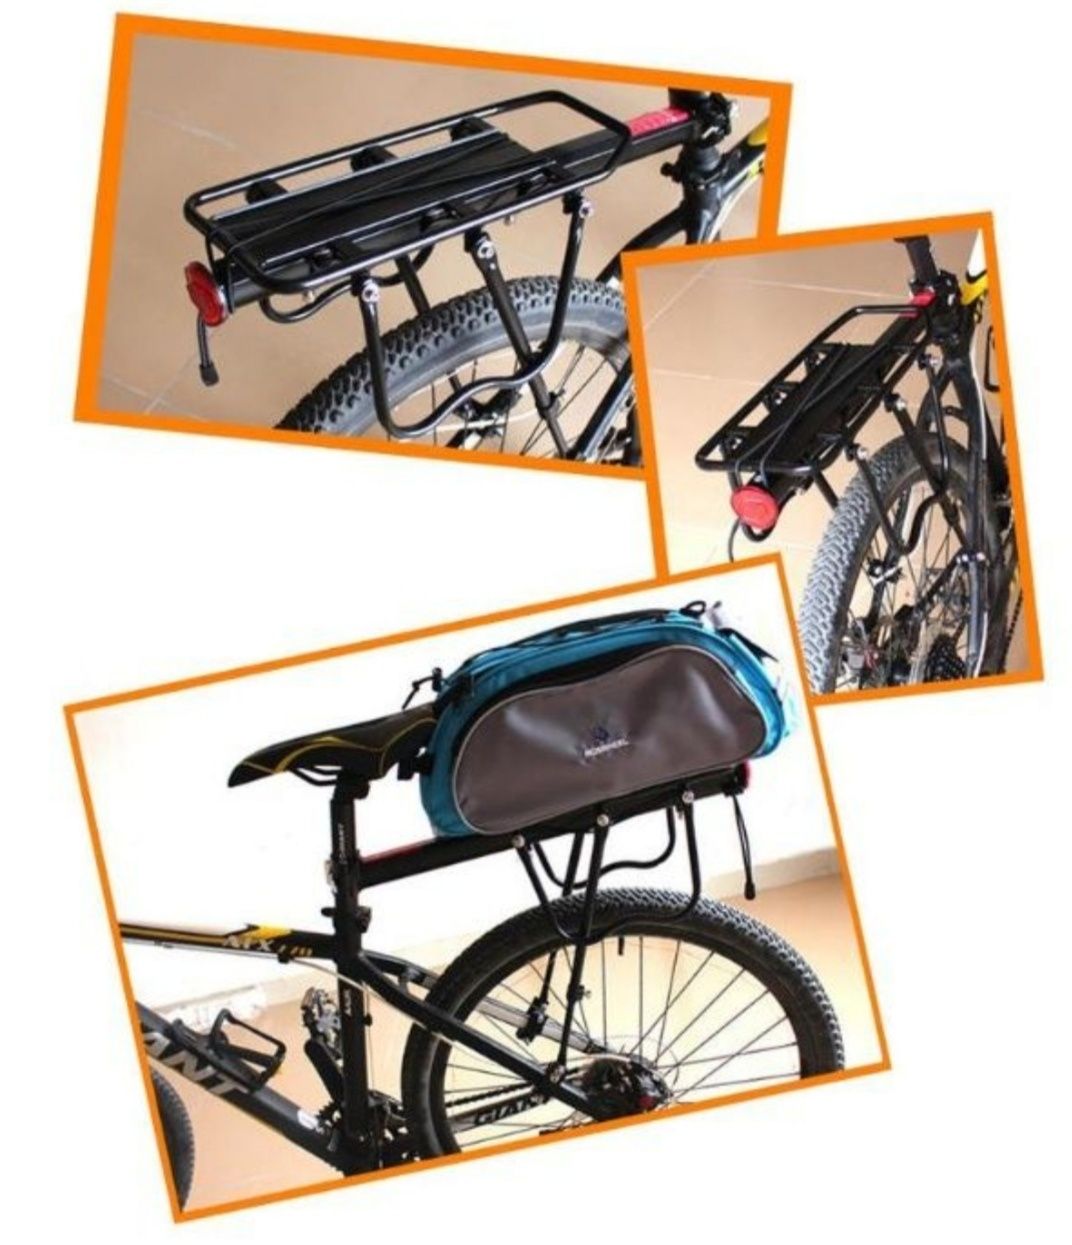 багажник для велосипеда консольный,усиленный,универсальн, велобагажник